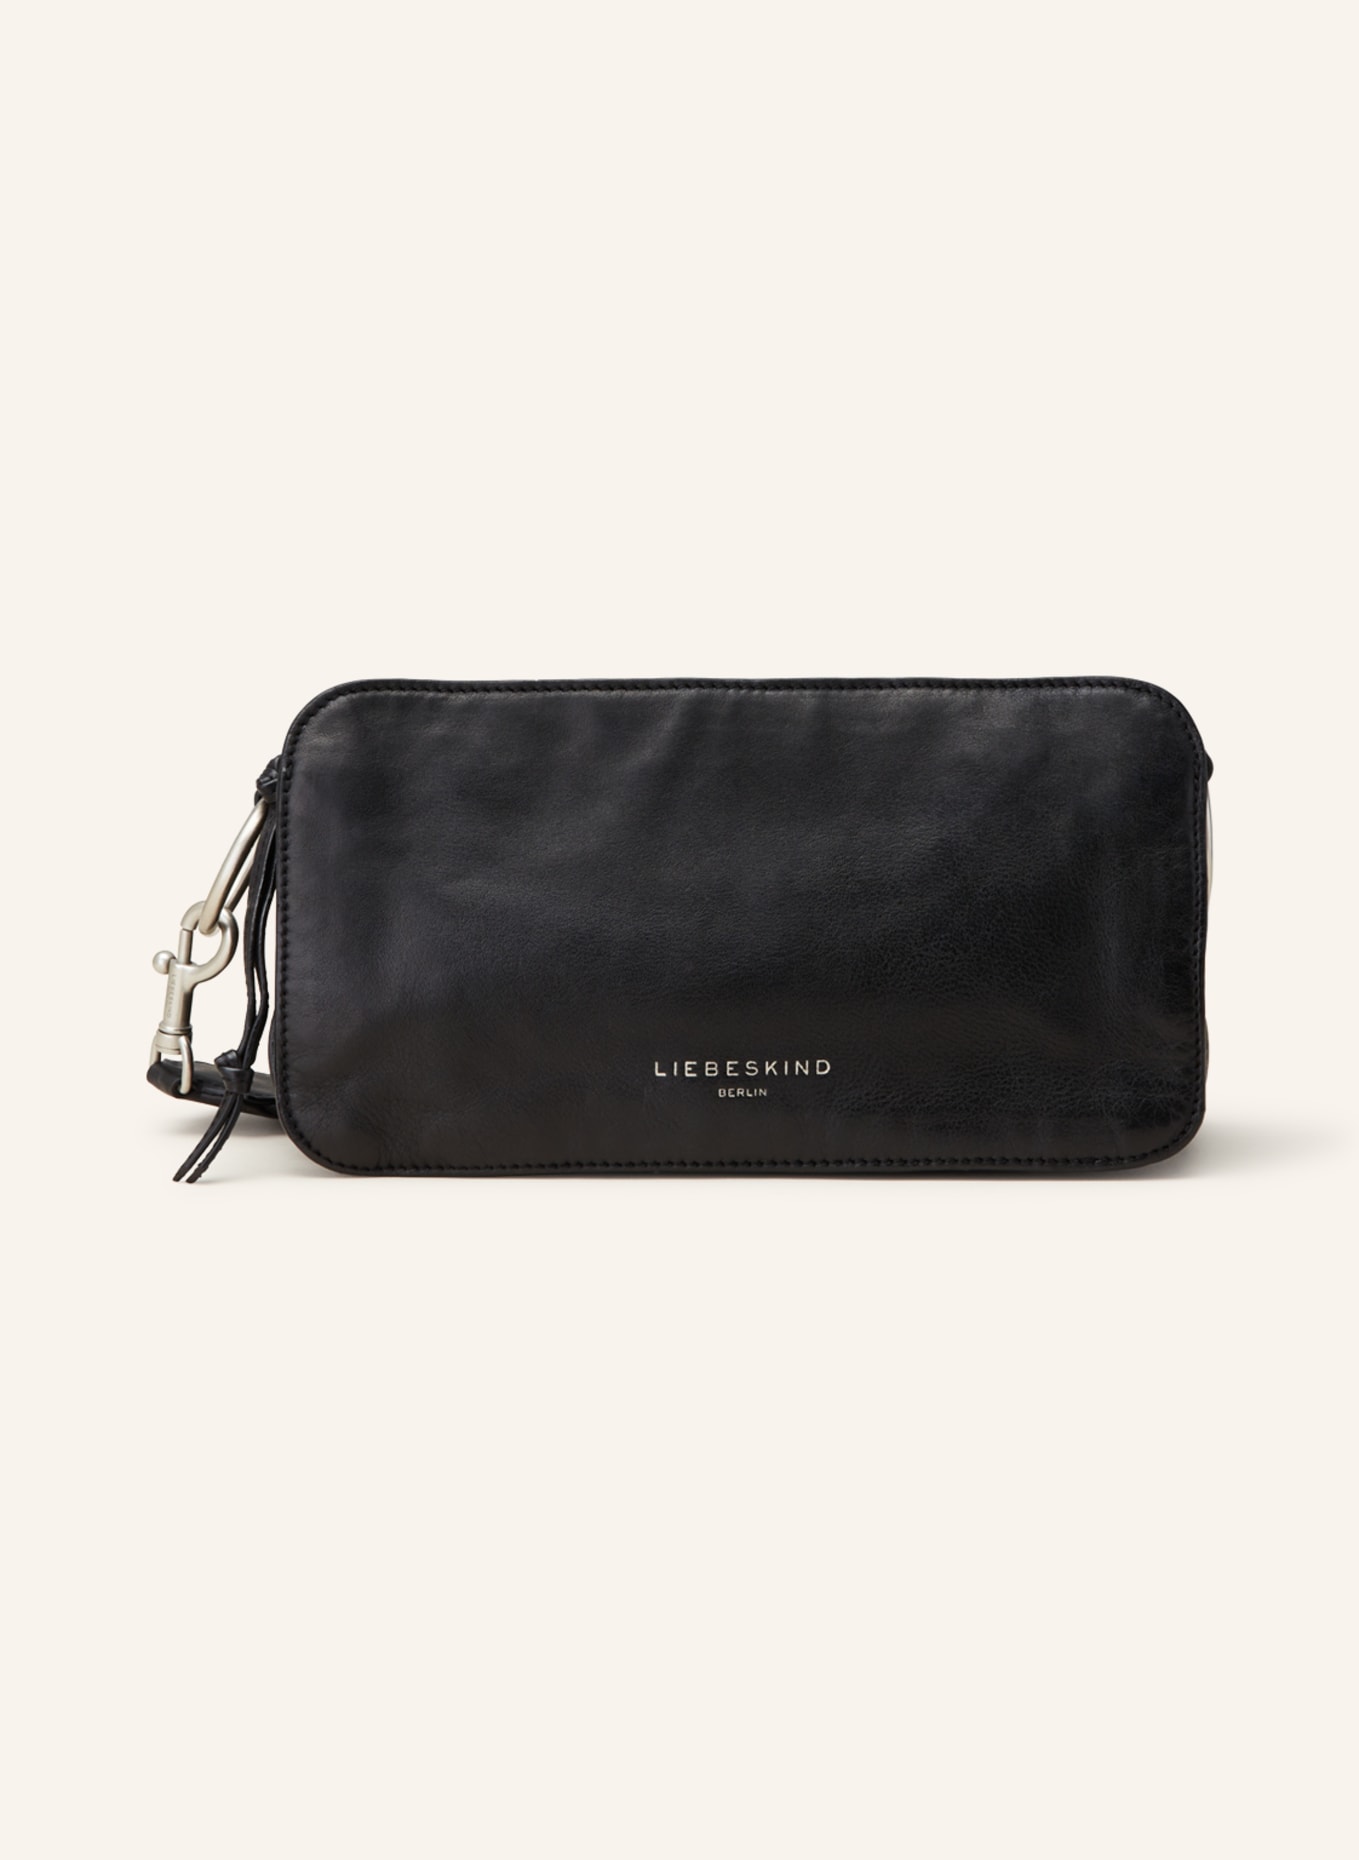 LIEBESKIND Crossbody bag, Color: BLACK (Image 1)